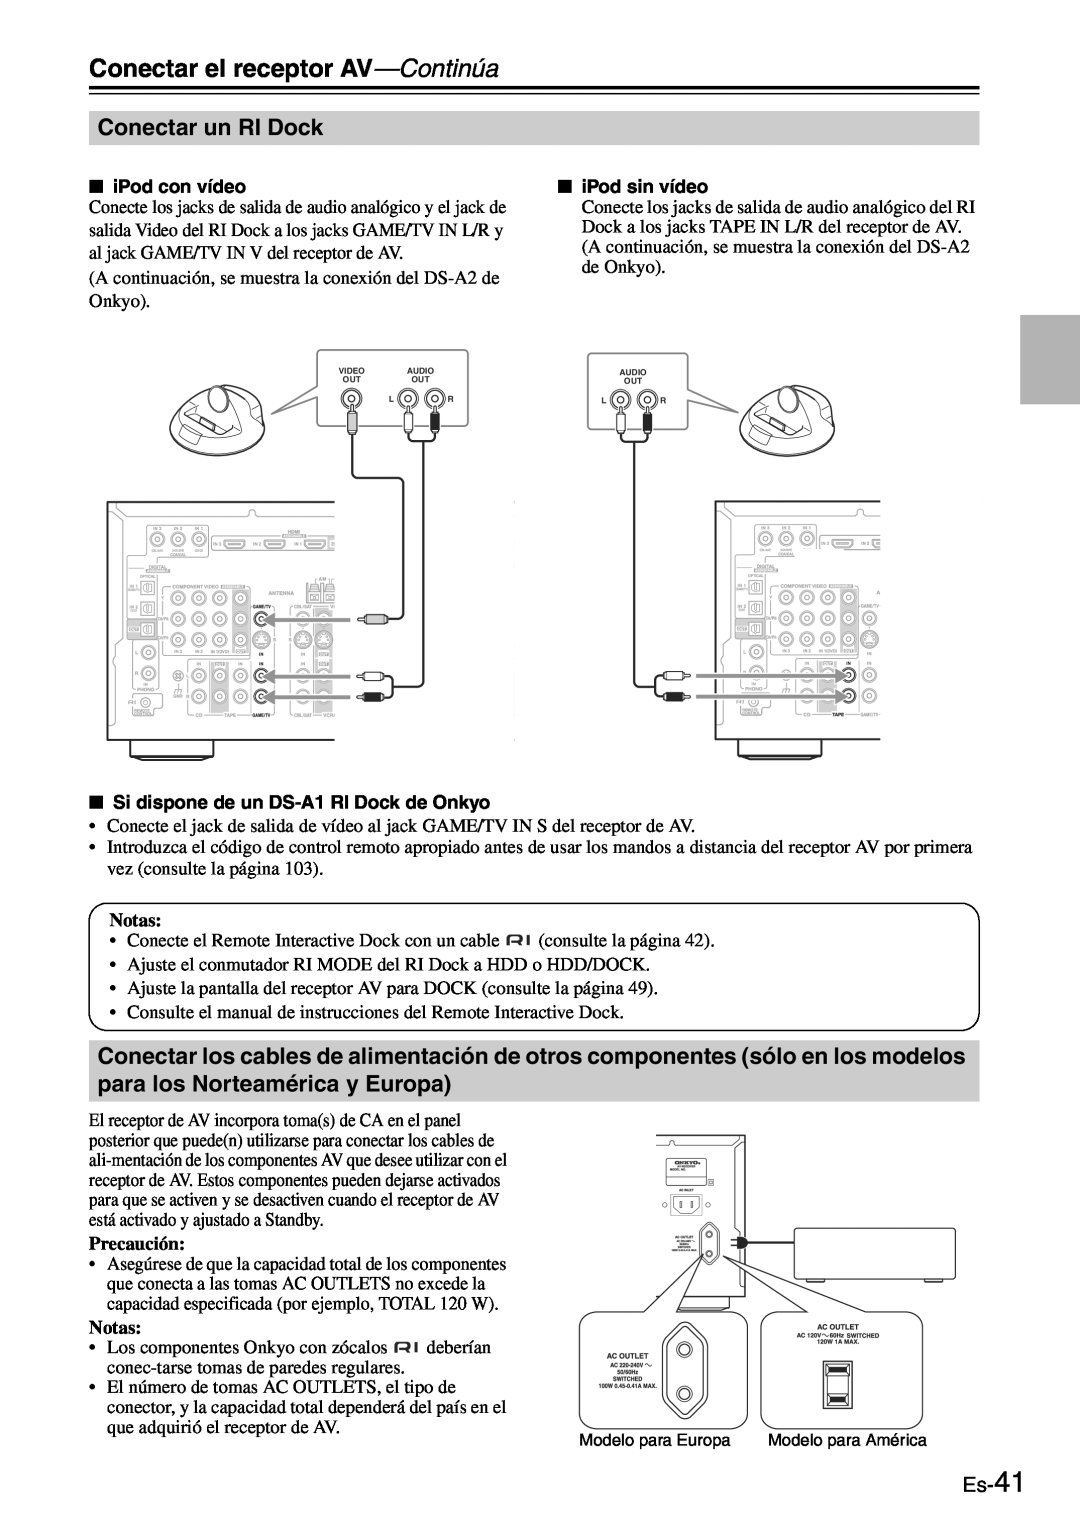 Onkyo TX-SR705 manual Conectar un RI Dock, Es-41, Conectar el receptor AV-Continúa, Notas, Precaución 